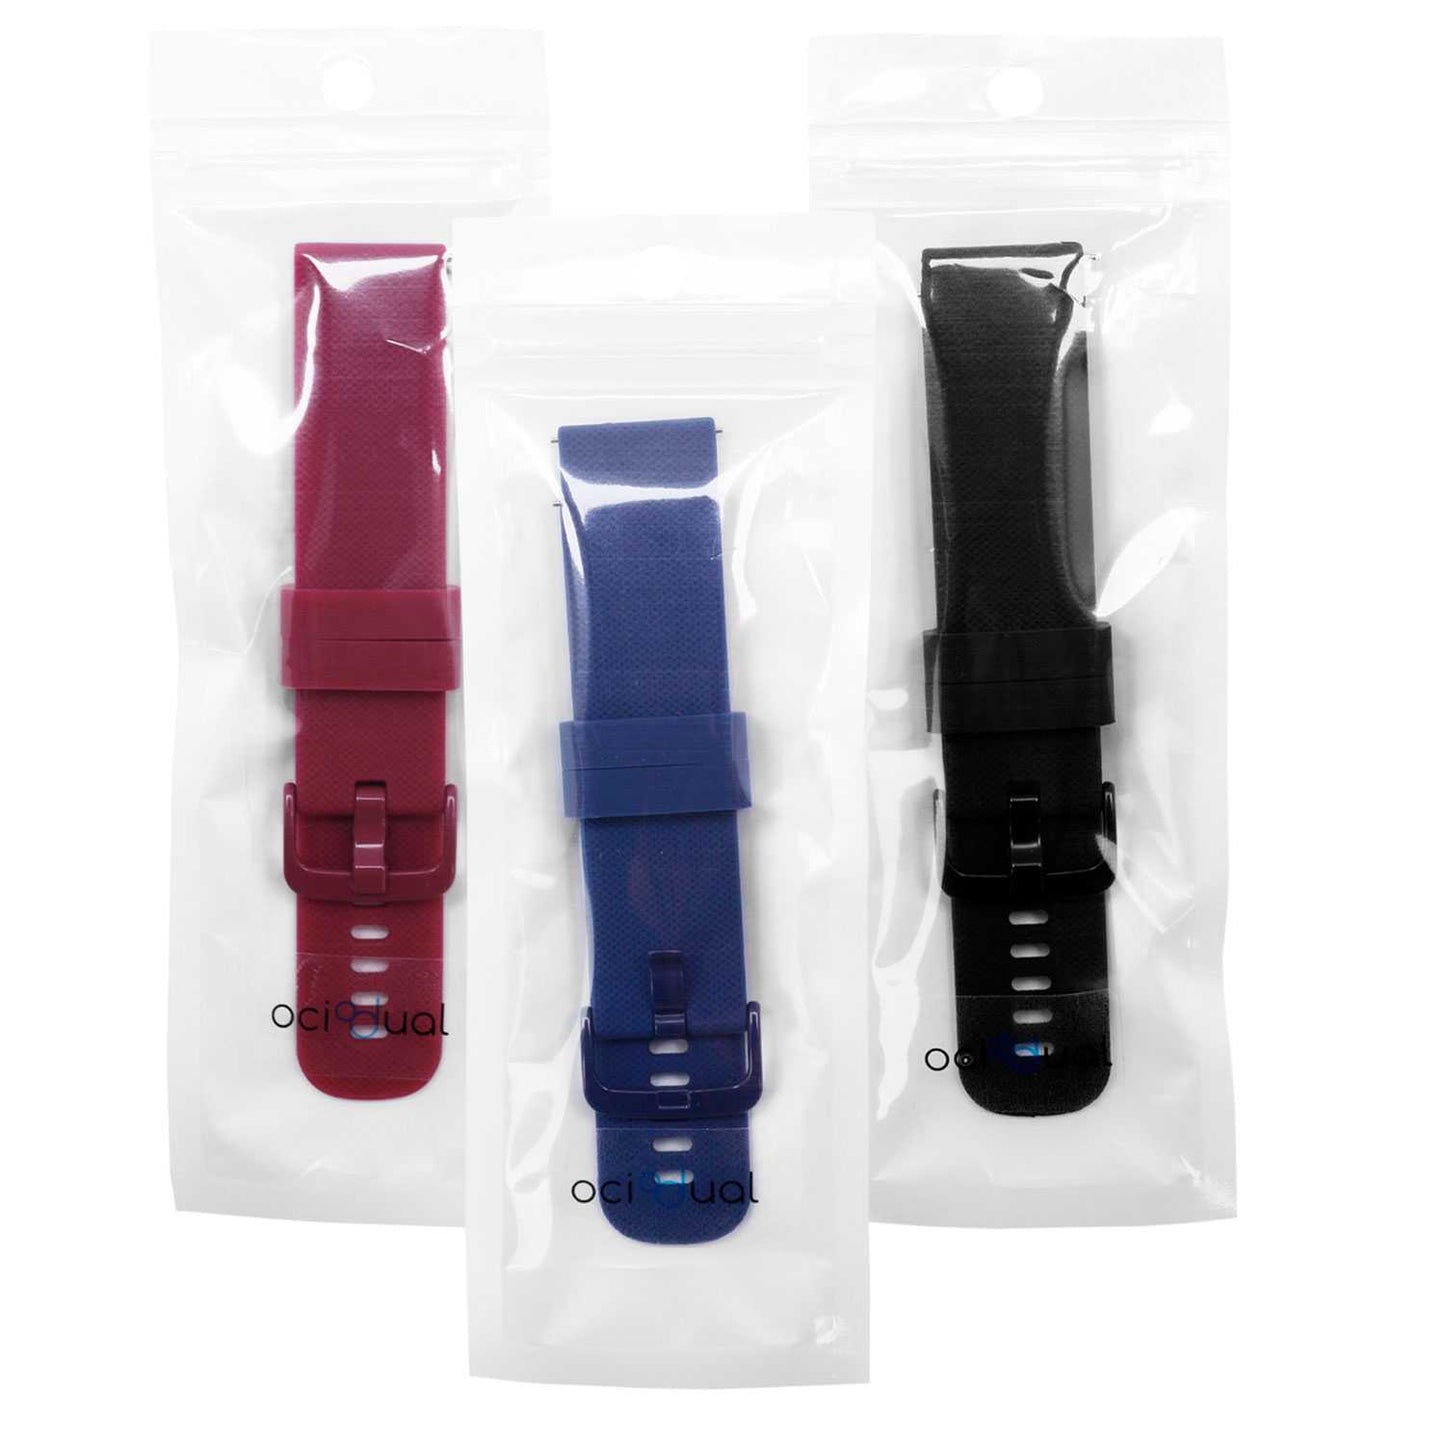 Pack de 3 Correas de Silicona para Reloj,18mm,Negro/Azul Oscuro/Burdeos